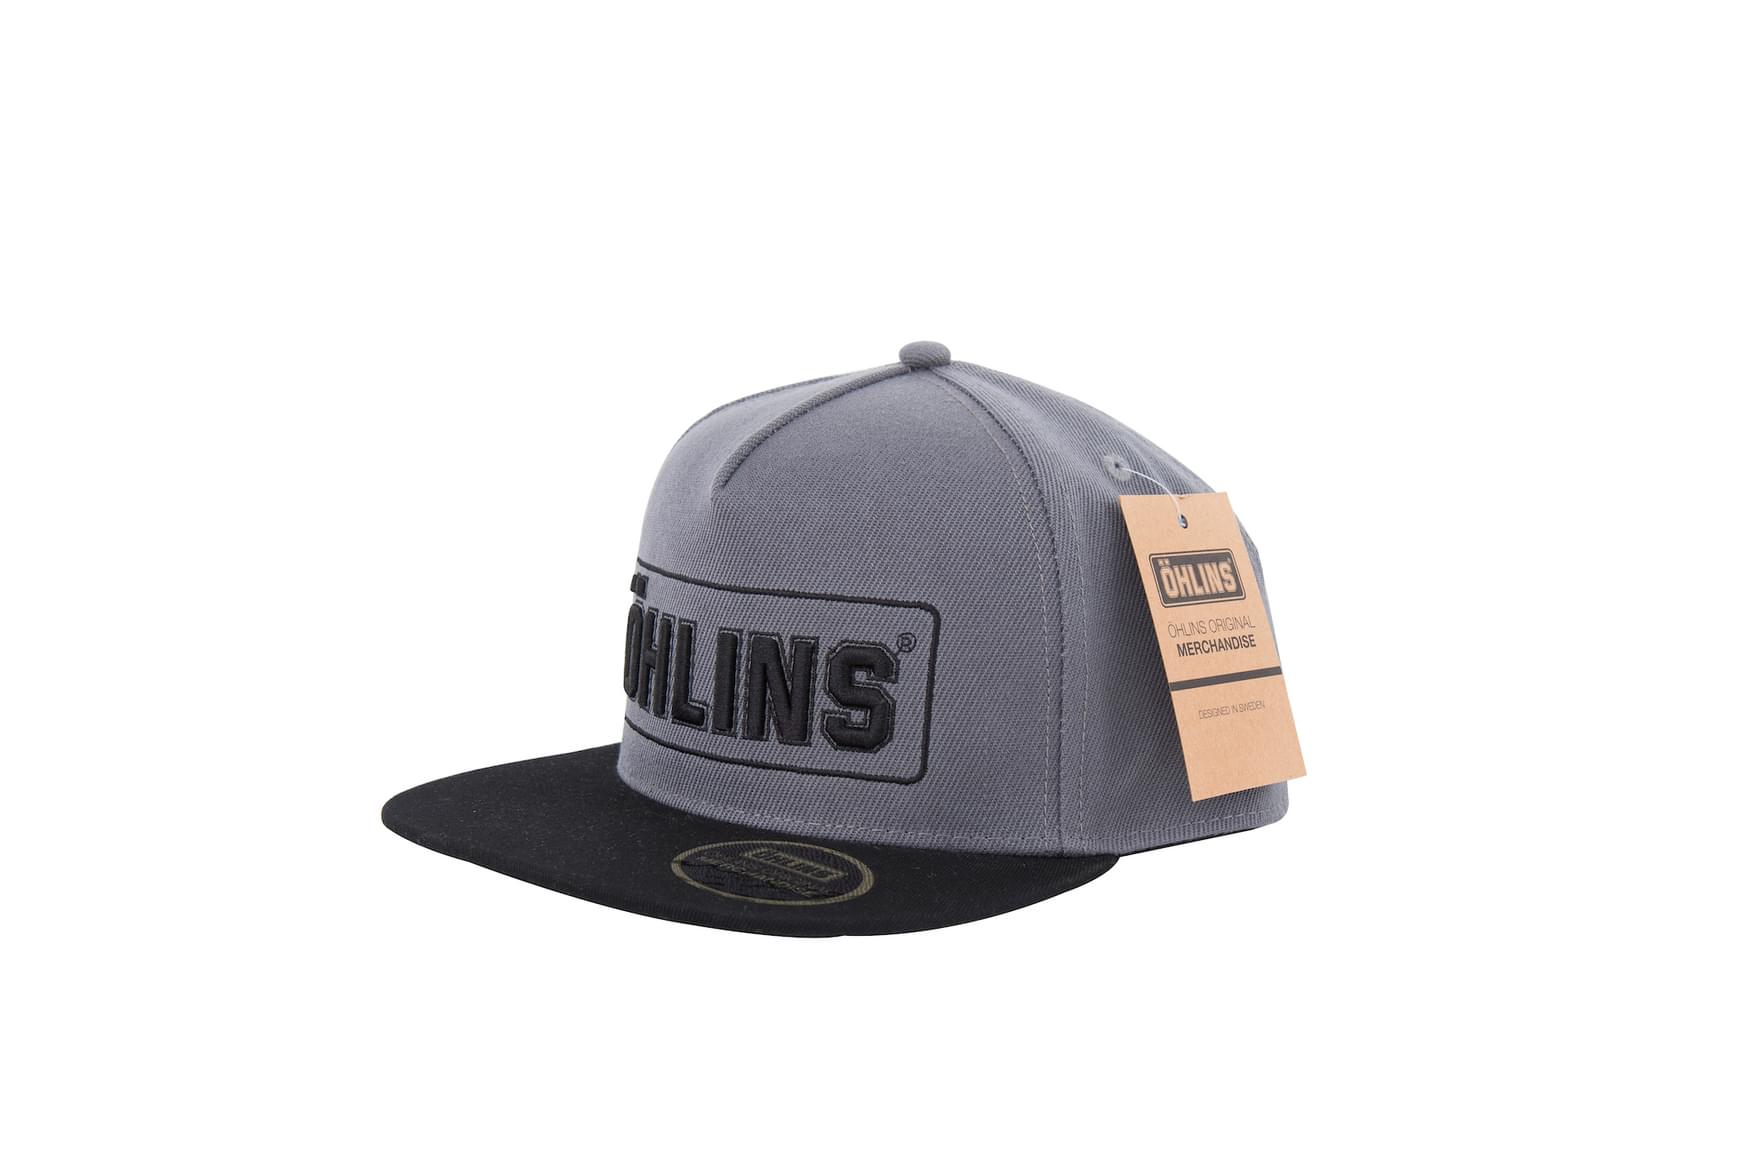 Hlins original cap